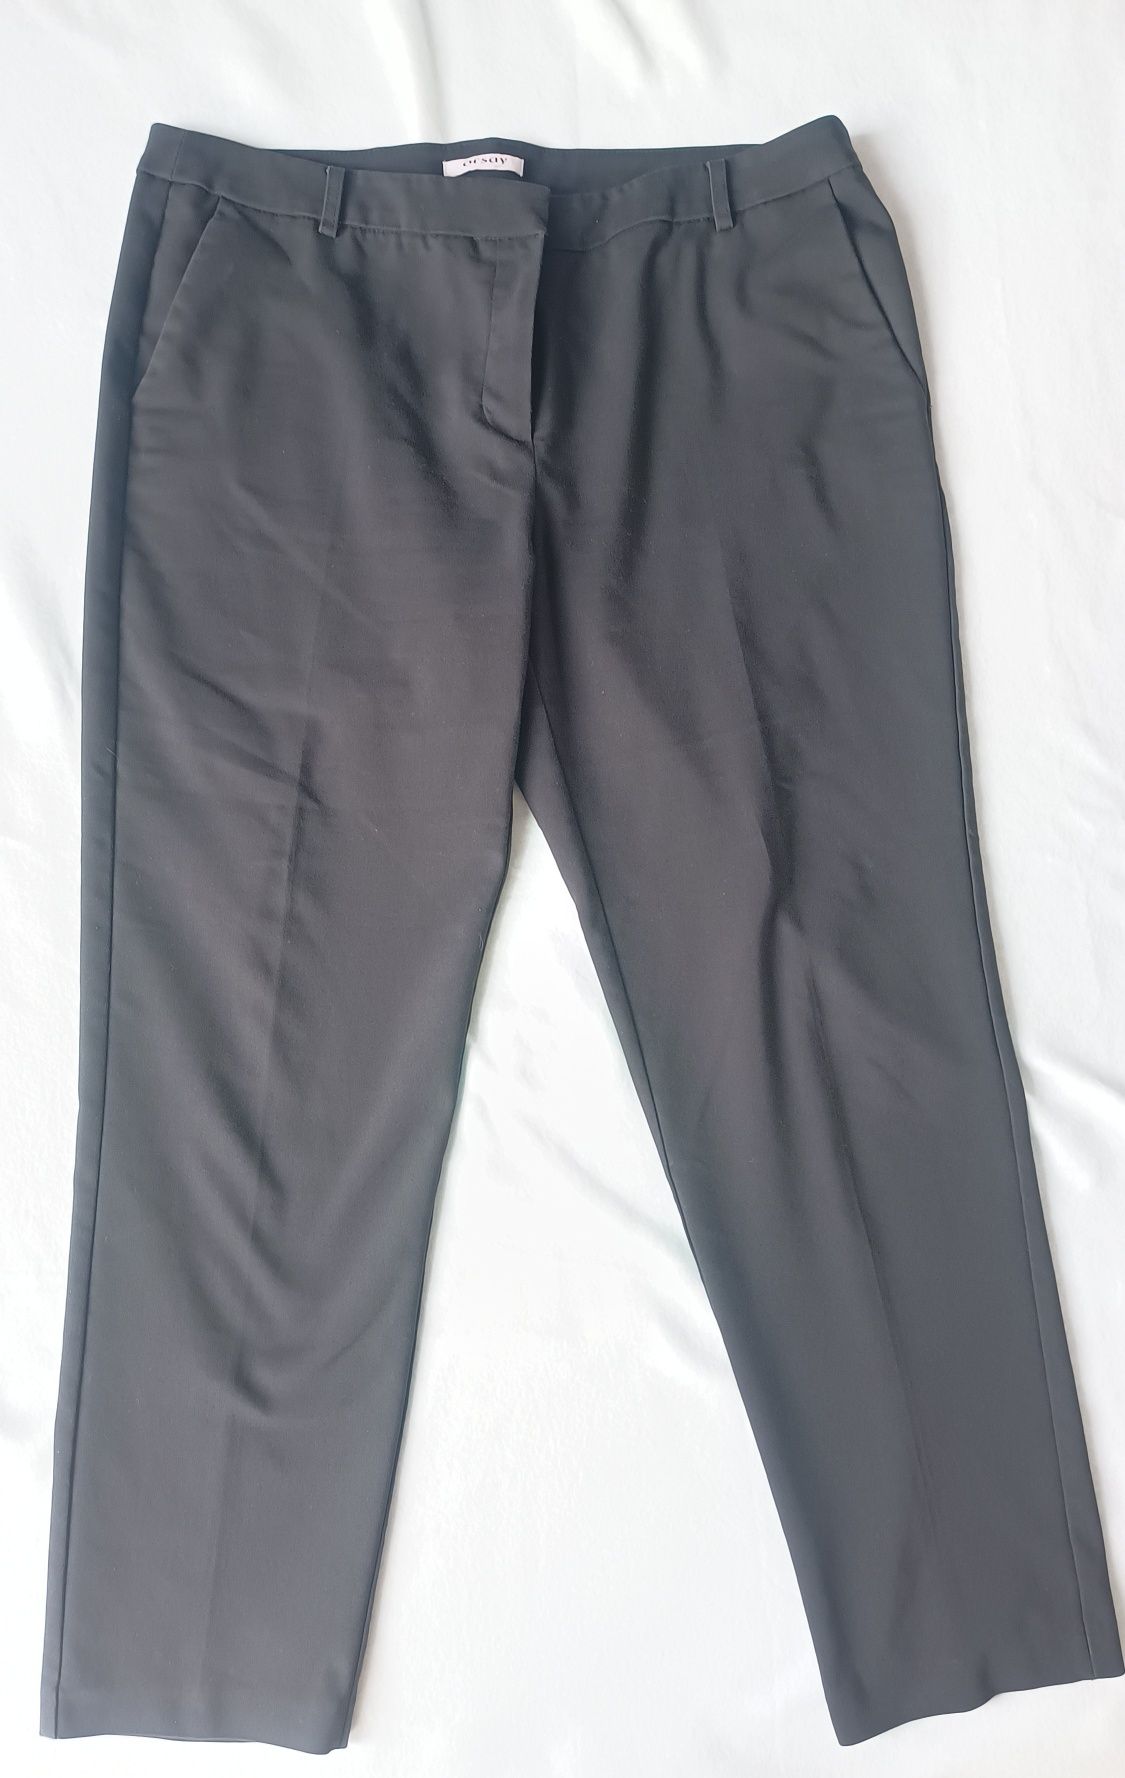 Czarne spodnie damskie do kostki, Orsey, rozmiar 38